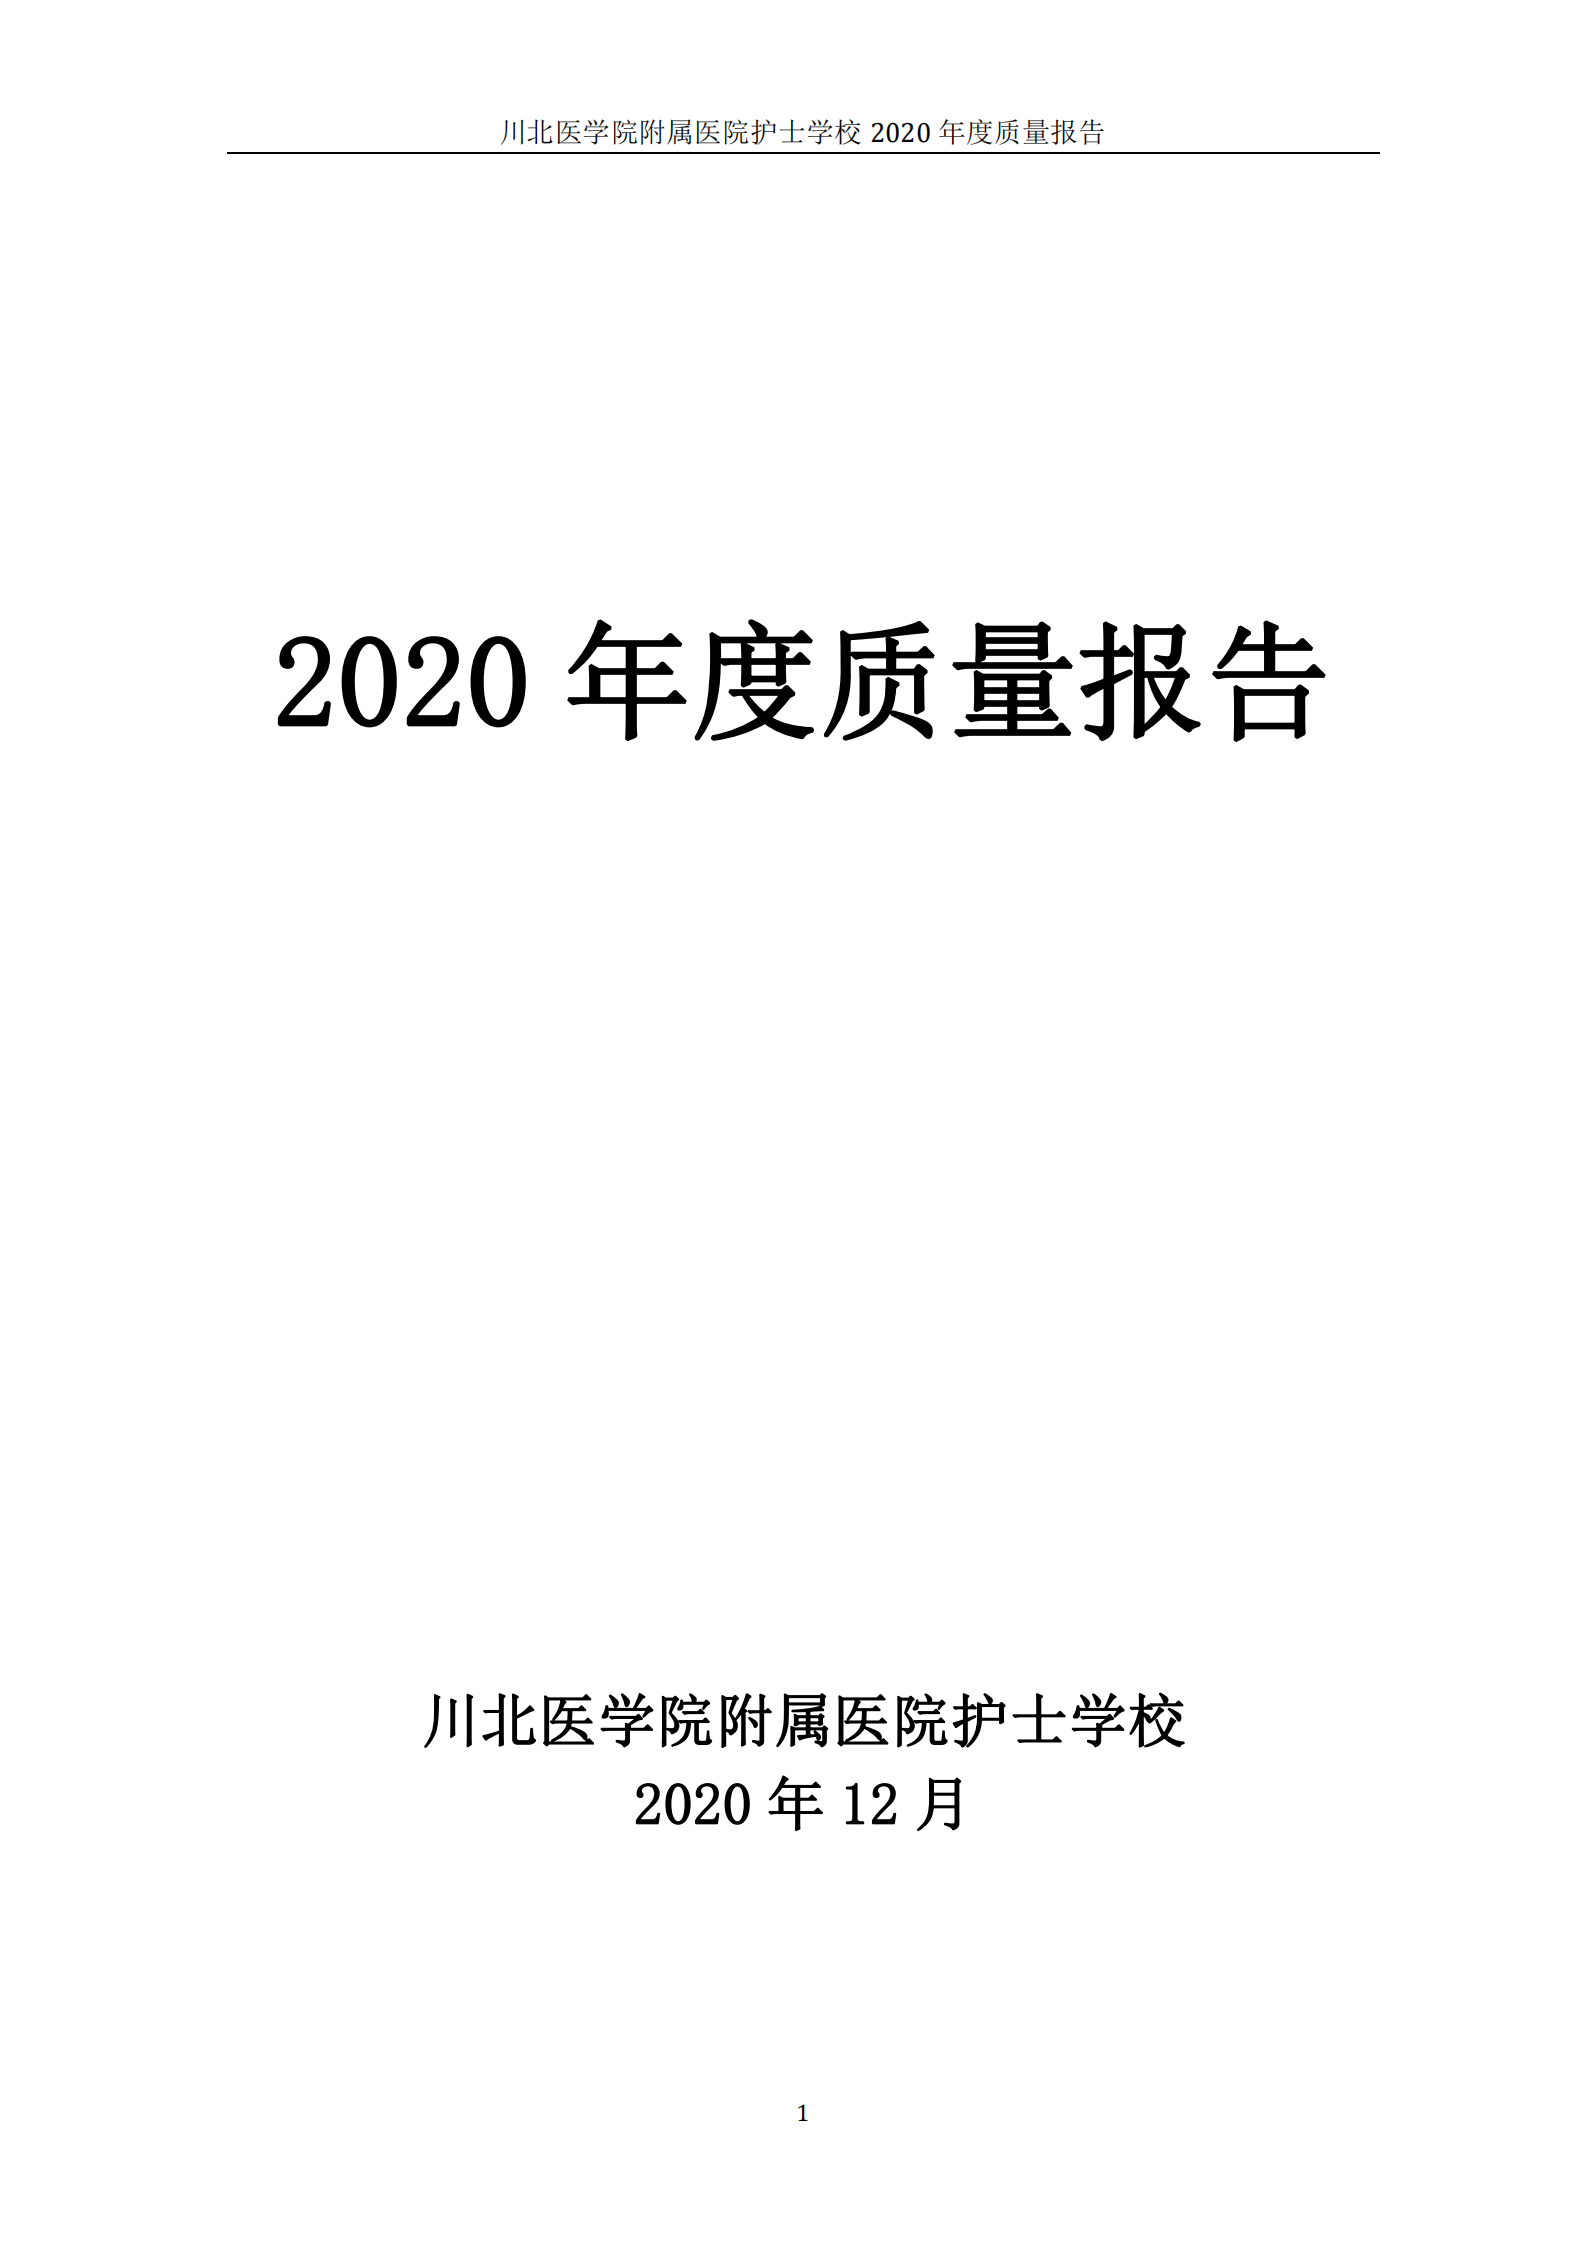 2020年度质量报告_00.png